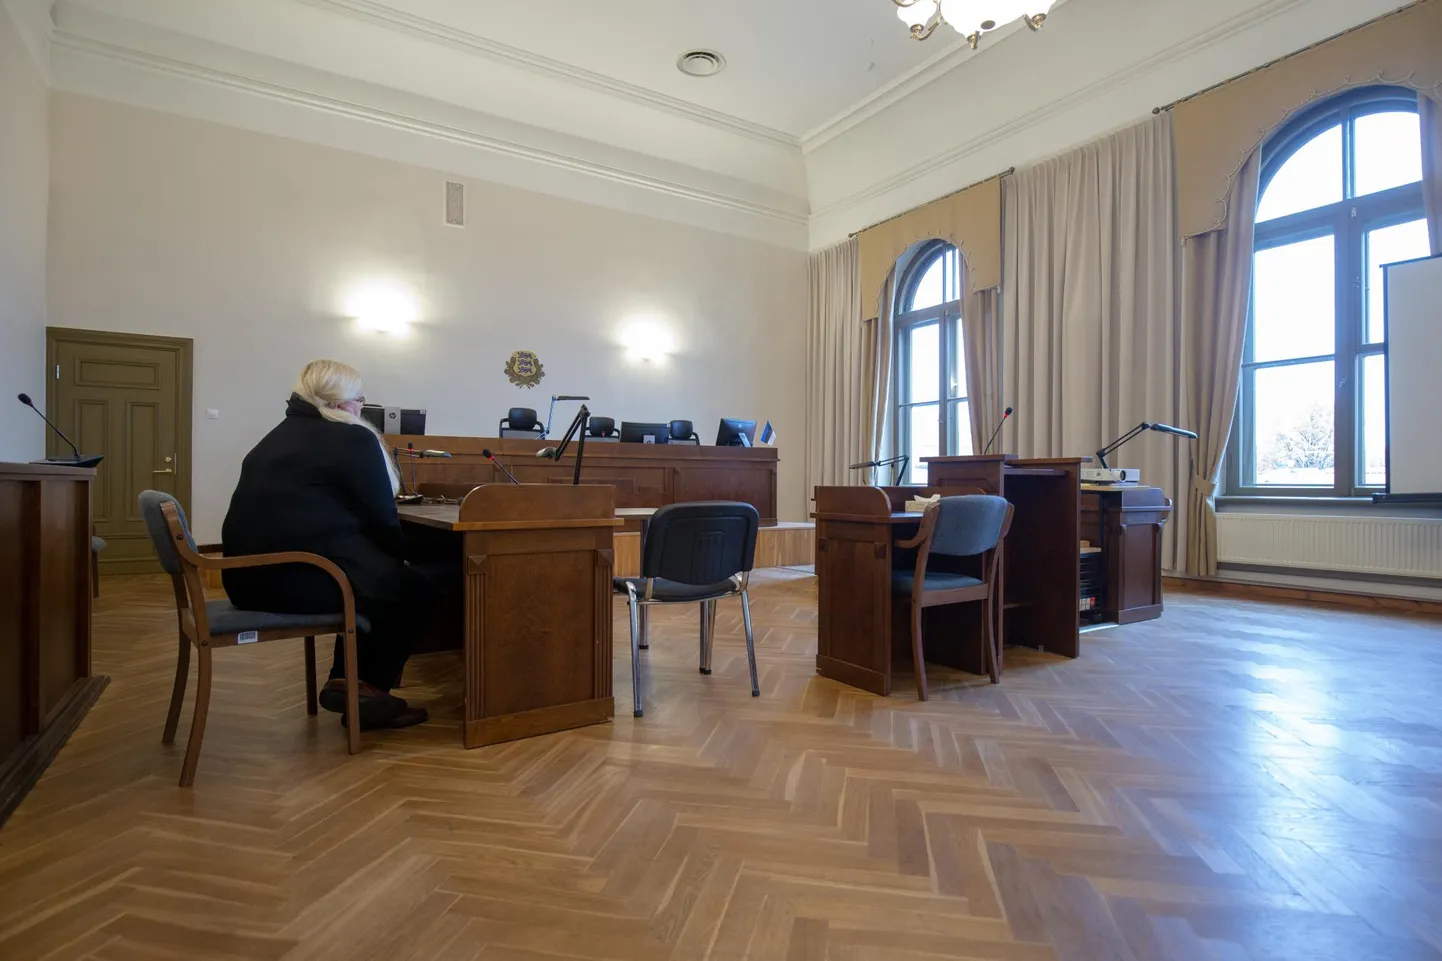 17. oktoobril mõisteti Maie Jallai süüdi Viljandi linnavalitsuselt rohkem kui 33 000 euro omastamises. Ta peab raha linnale tagasi maksma ning karistuseks on kahe aasta ja kaheksa kuu pikkune tingimisi vangistus.